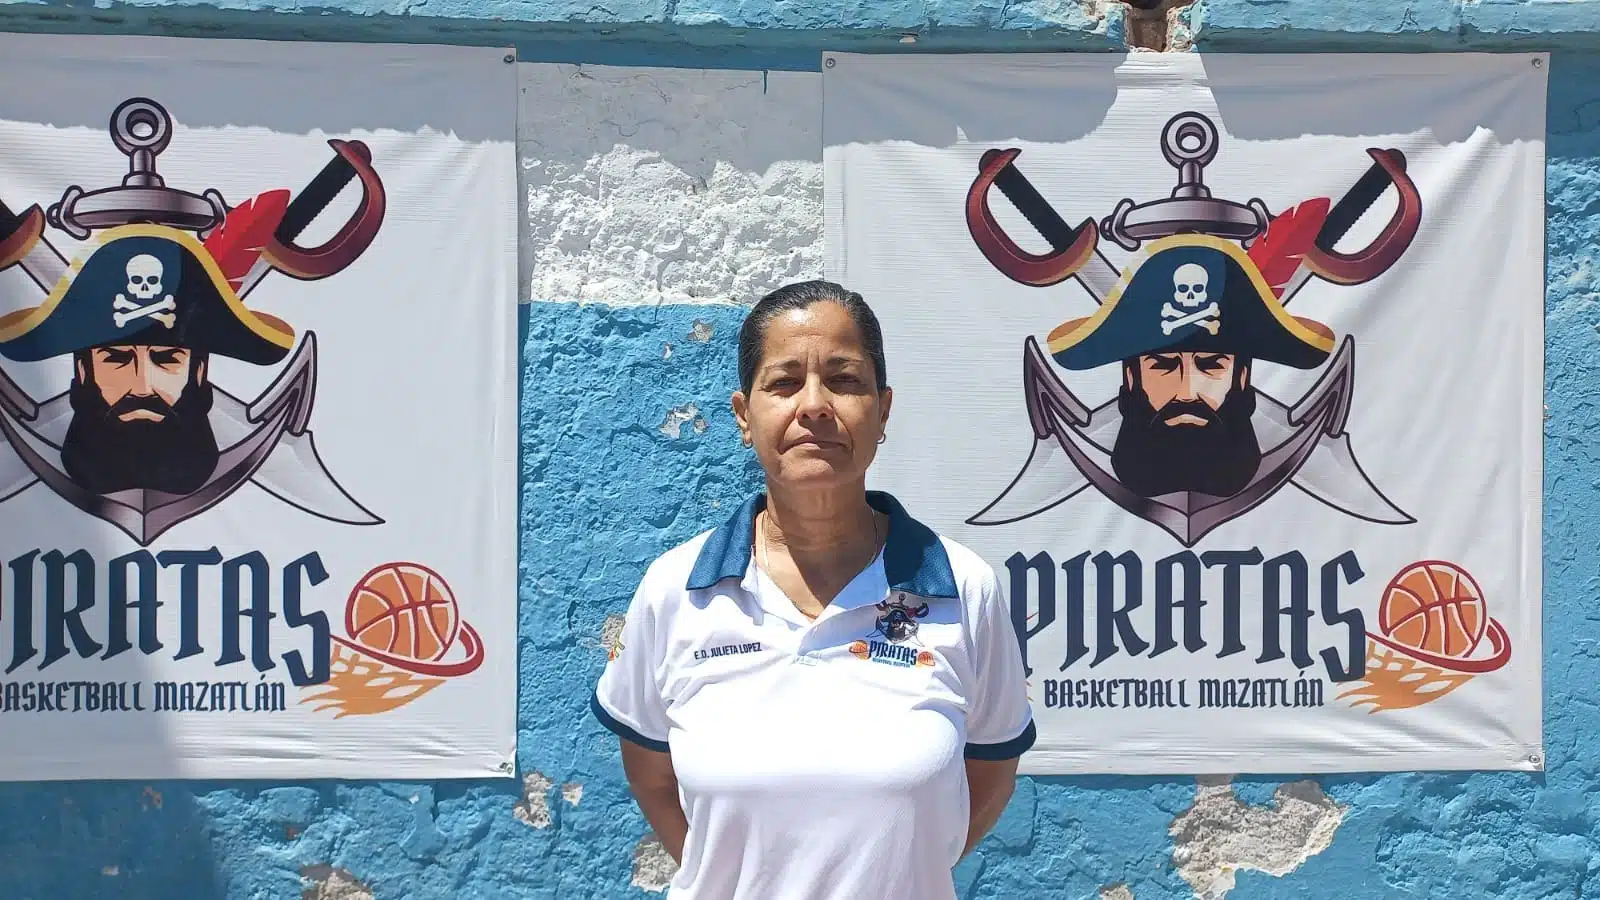 Piratas Basketball Mazatlán Cibacopa